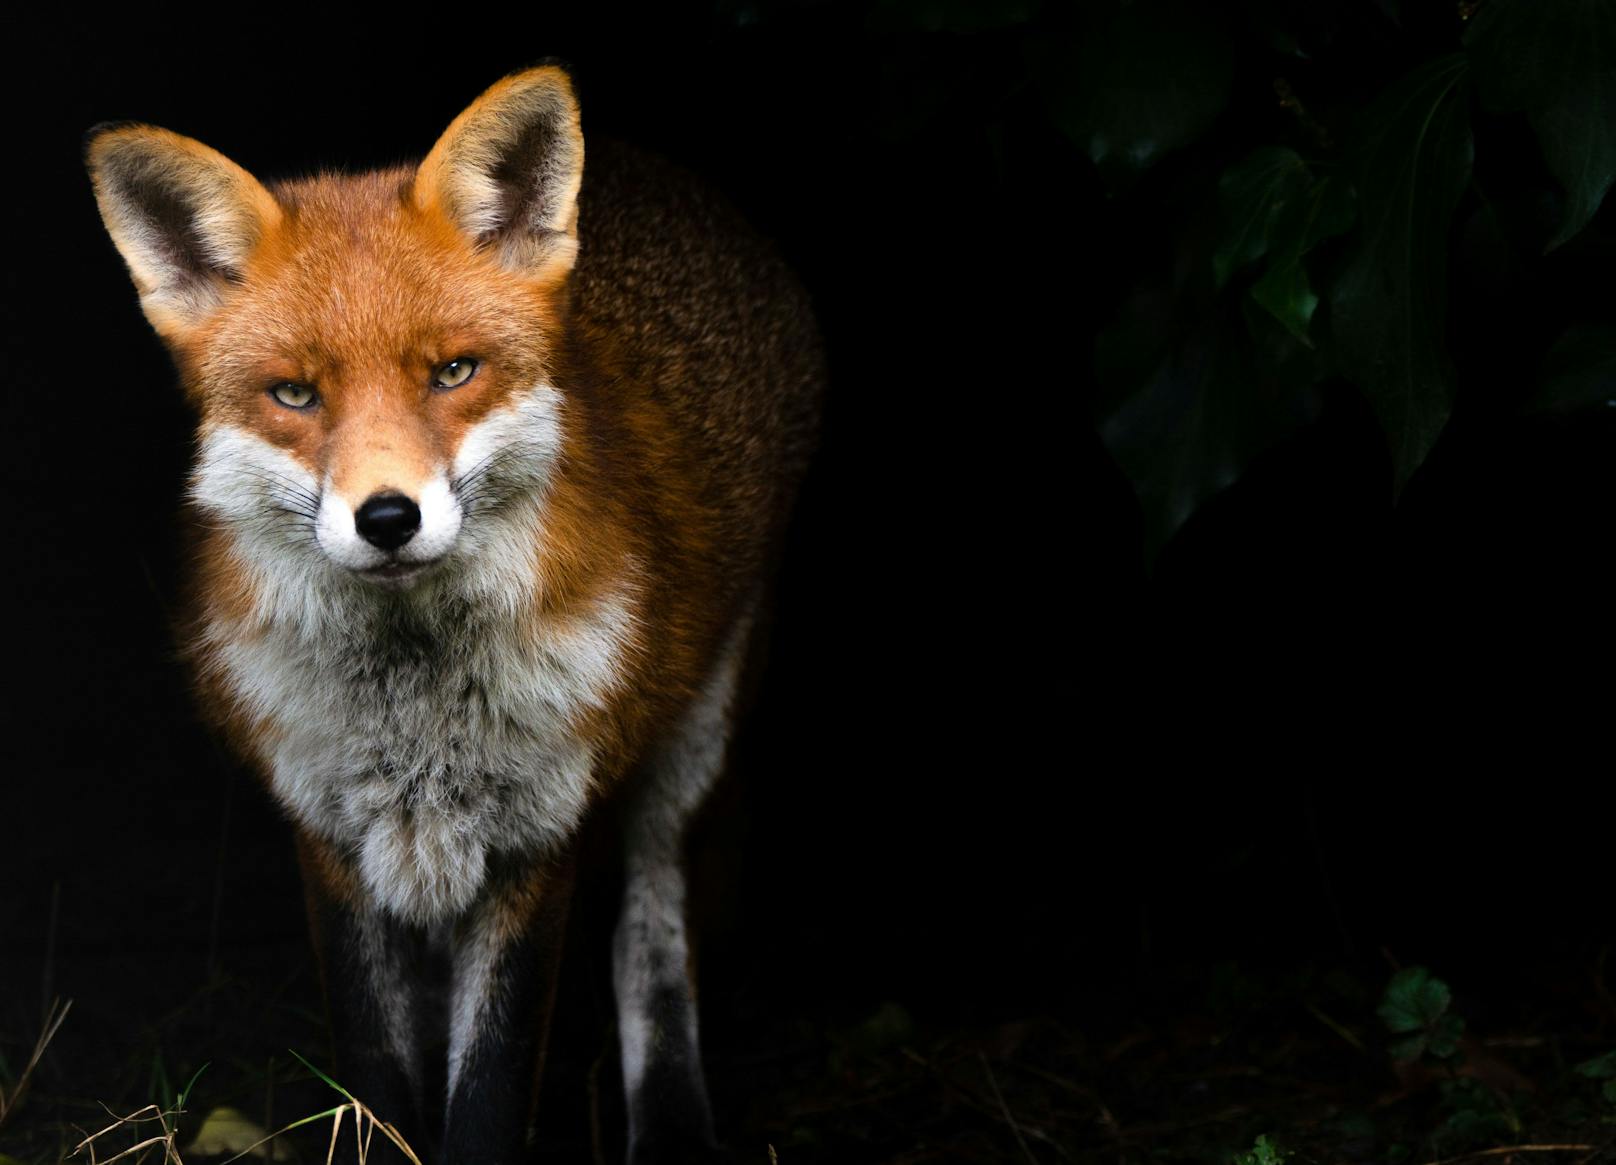 Der Essex Wildlife Trust Fotowettbewerb 2020 ist abgeschlossen und die Gewinner wurden gekürt. 